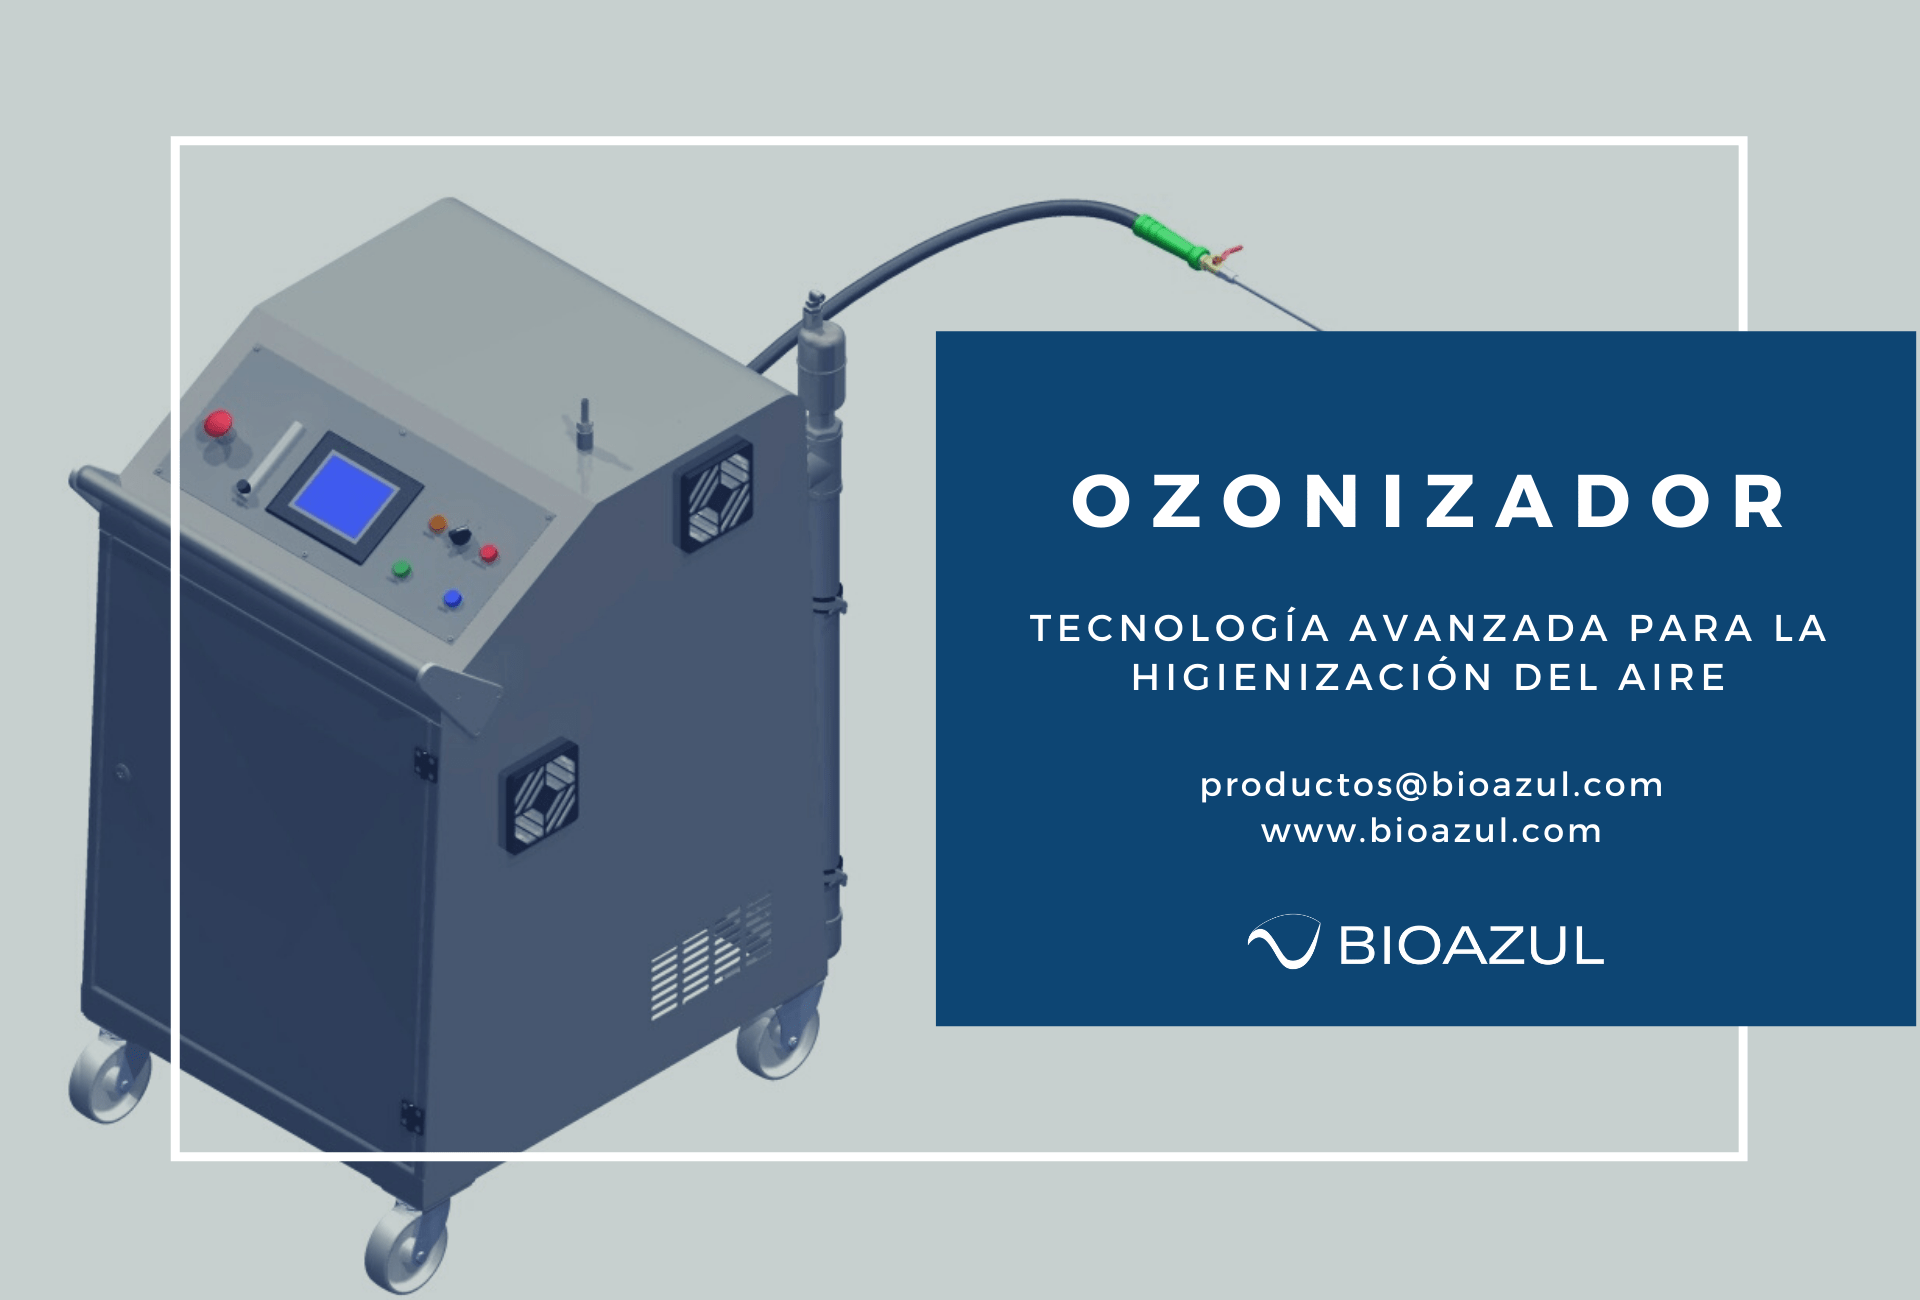 Ozonizador: tecnología avanzada para la higienización del aire